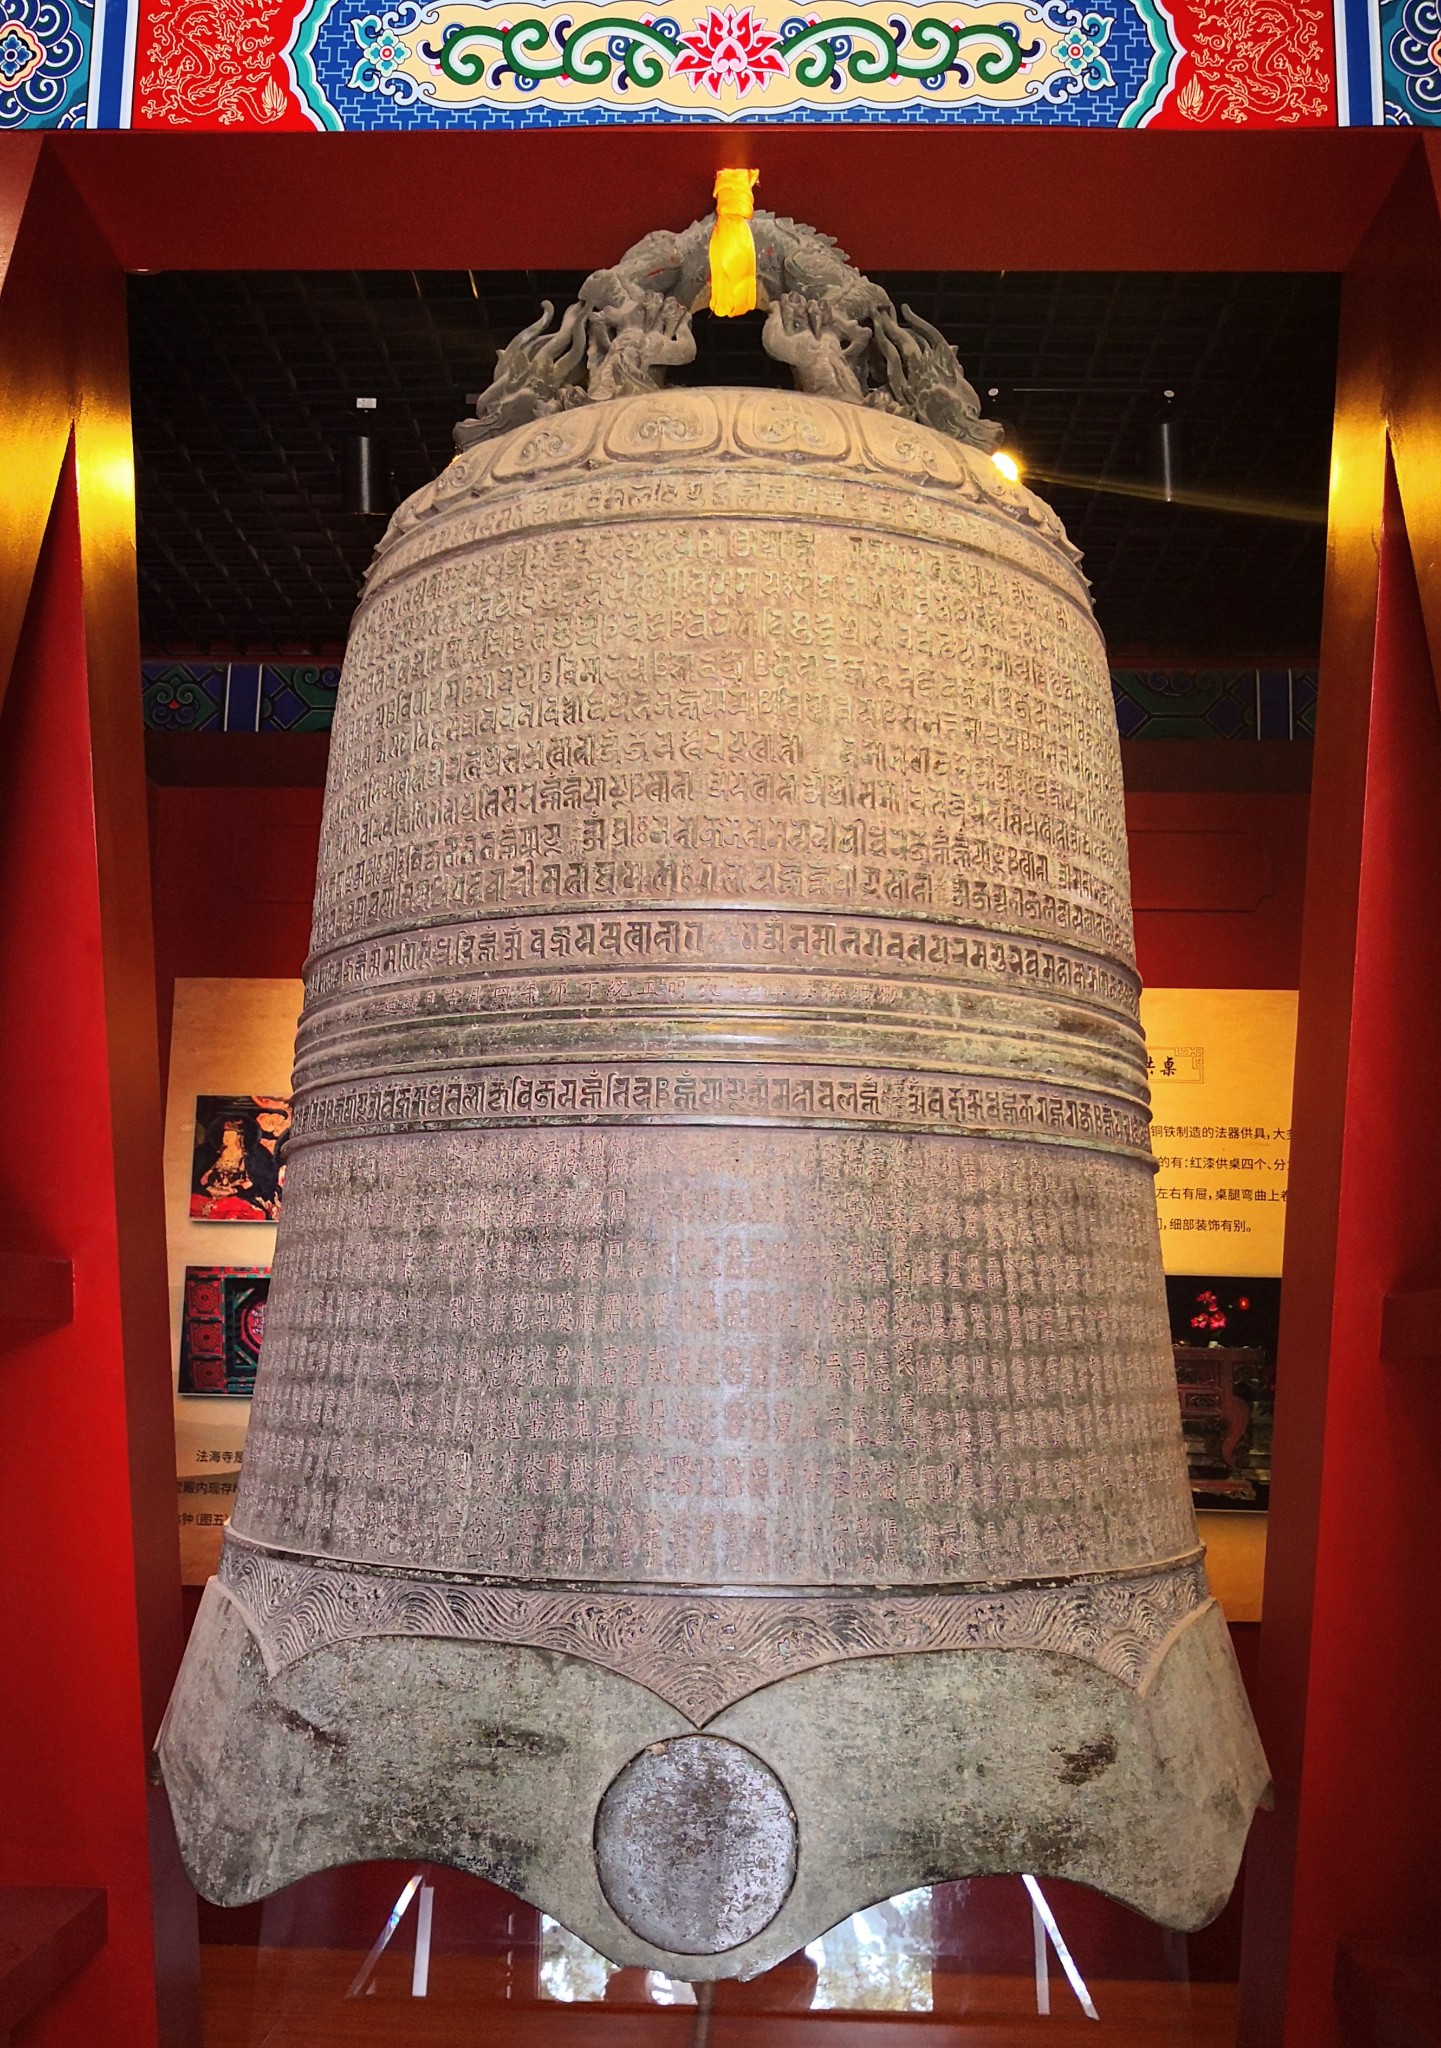 钟体上半部满铸题名经咒,下半部铸有建庙时的1000多名助缘人的姓名